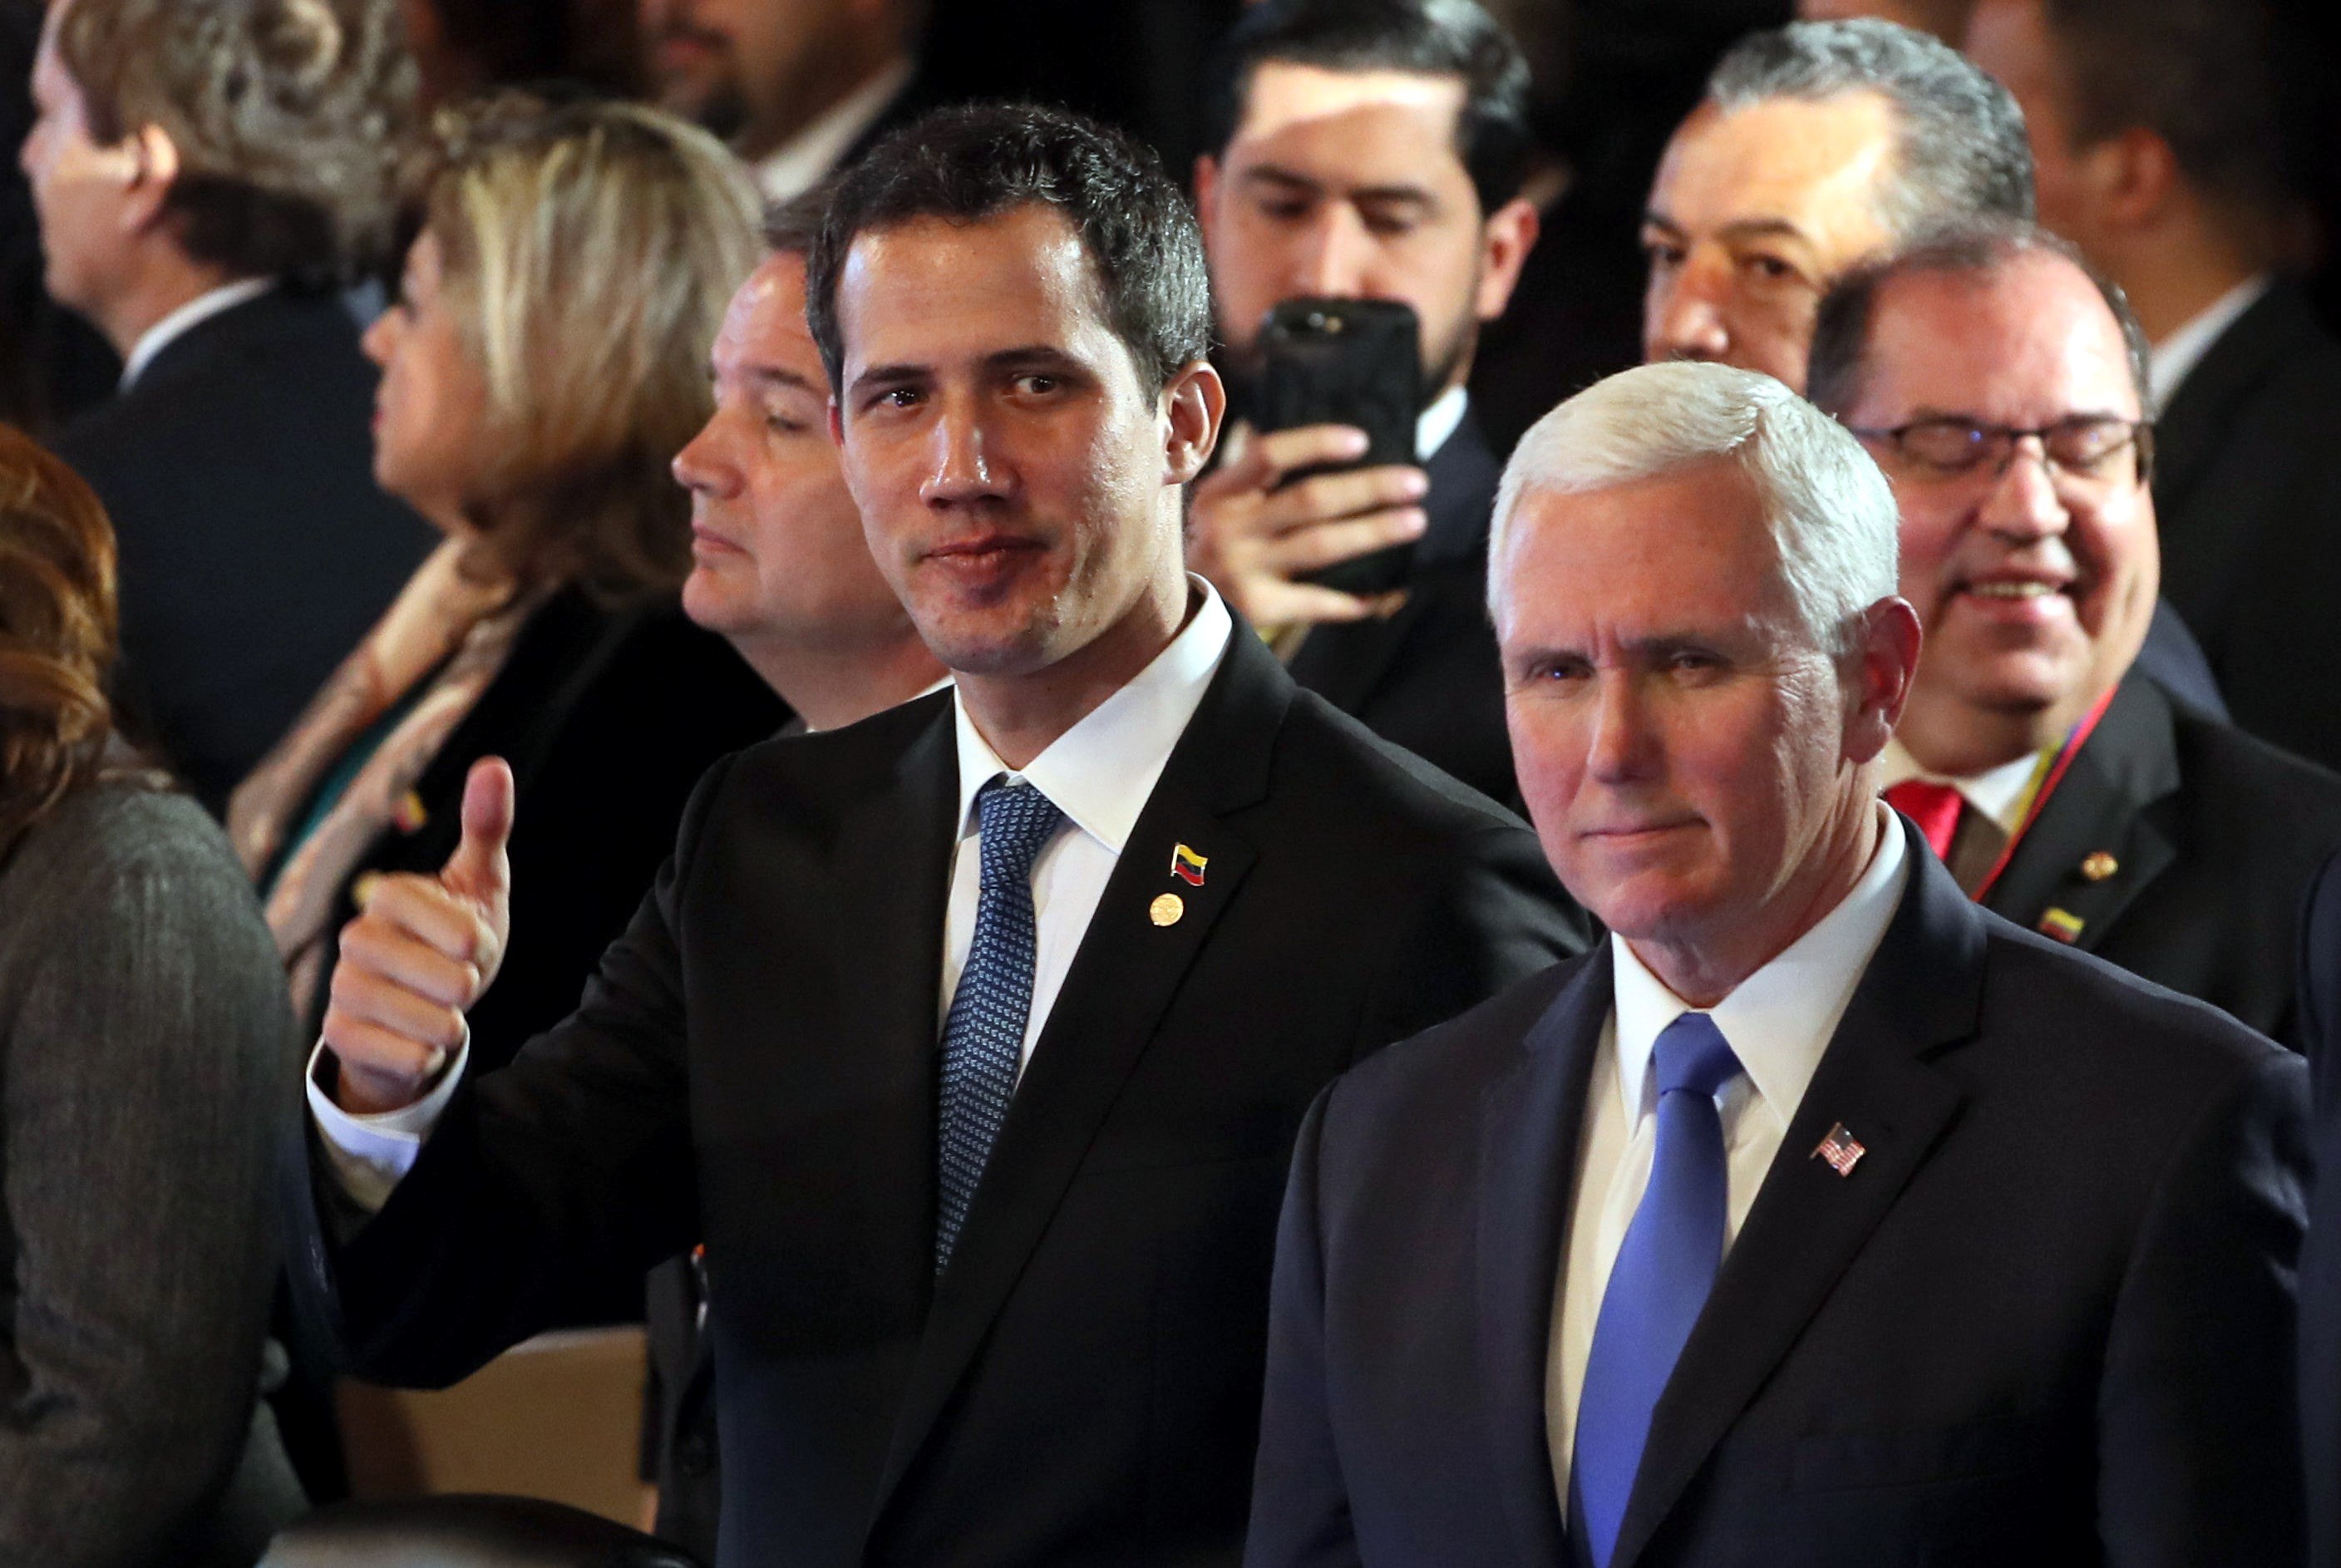 Foto: El líder opositor venezolano, Juan Guaidó, y el vicepresidente de Estados Unidos, Mike Pence, se reunieron en la cumbre del Grupo de Lima en Colombia, el 25 de febrero de 2019